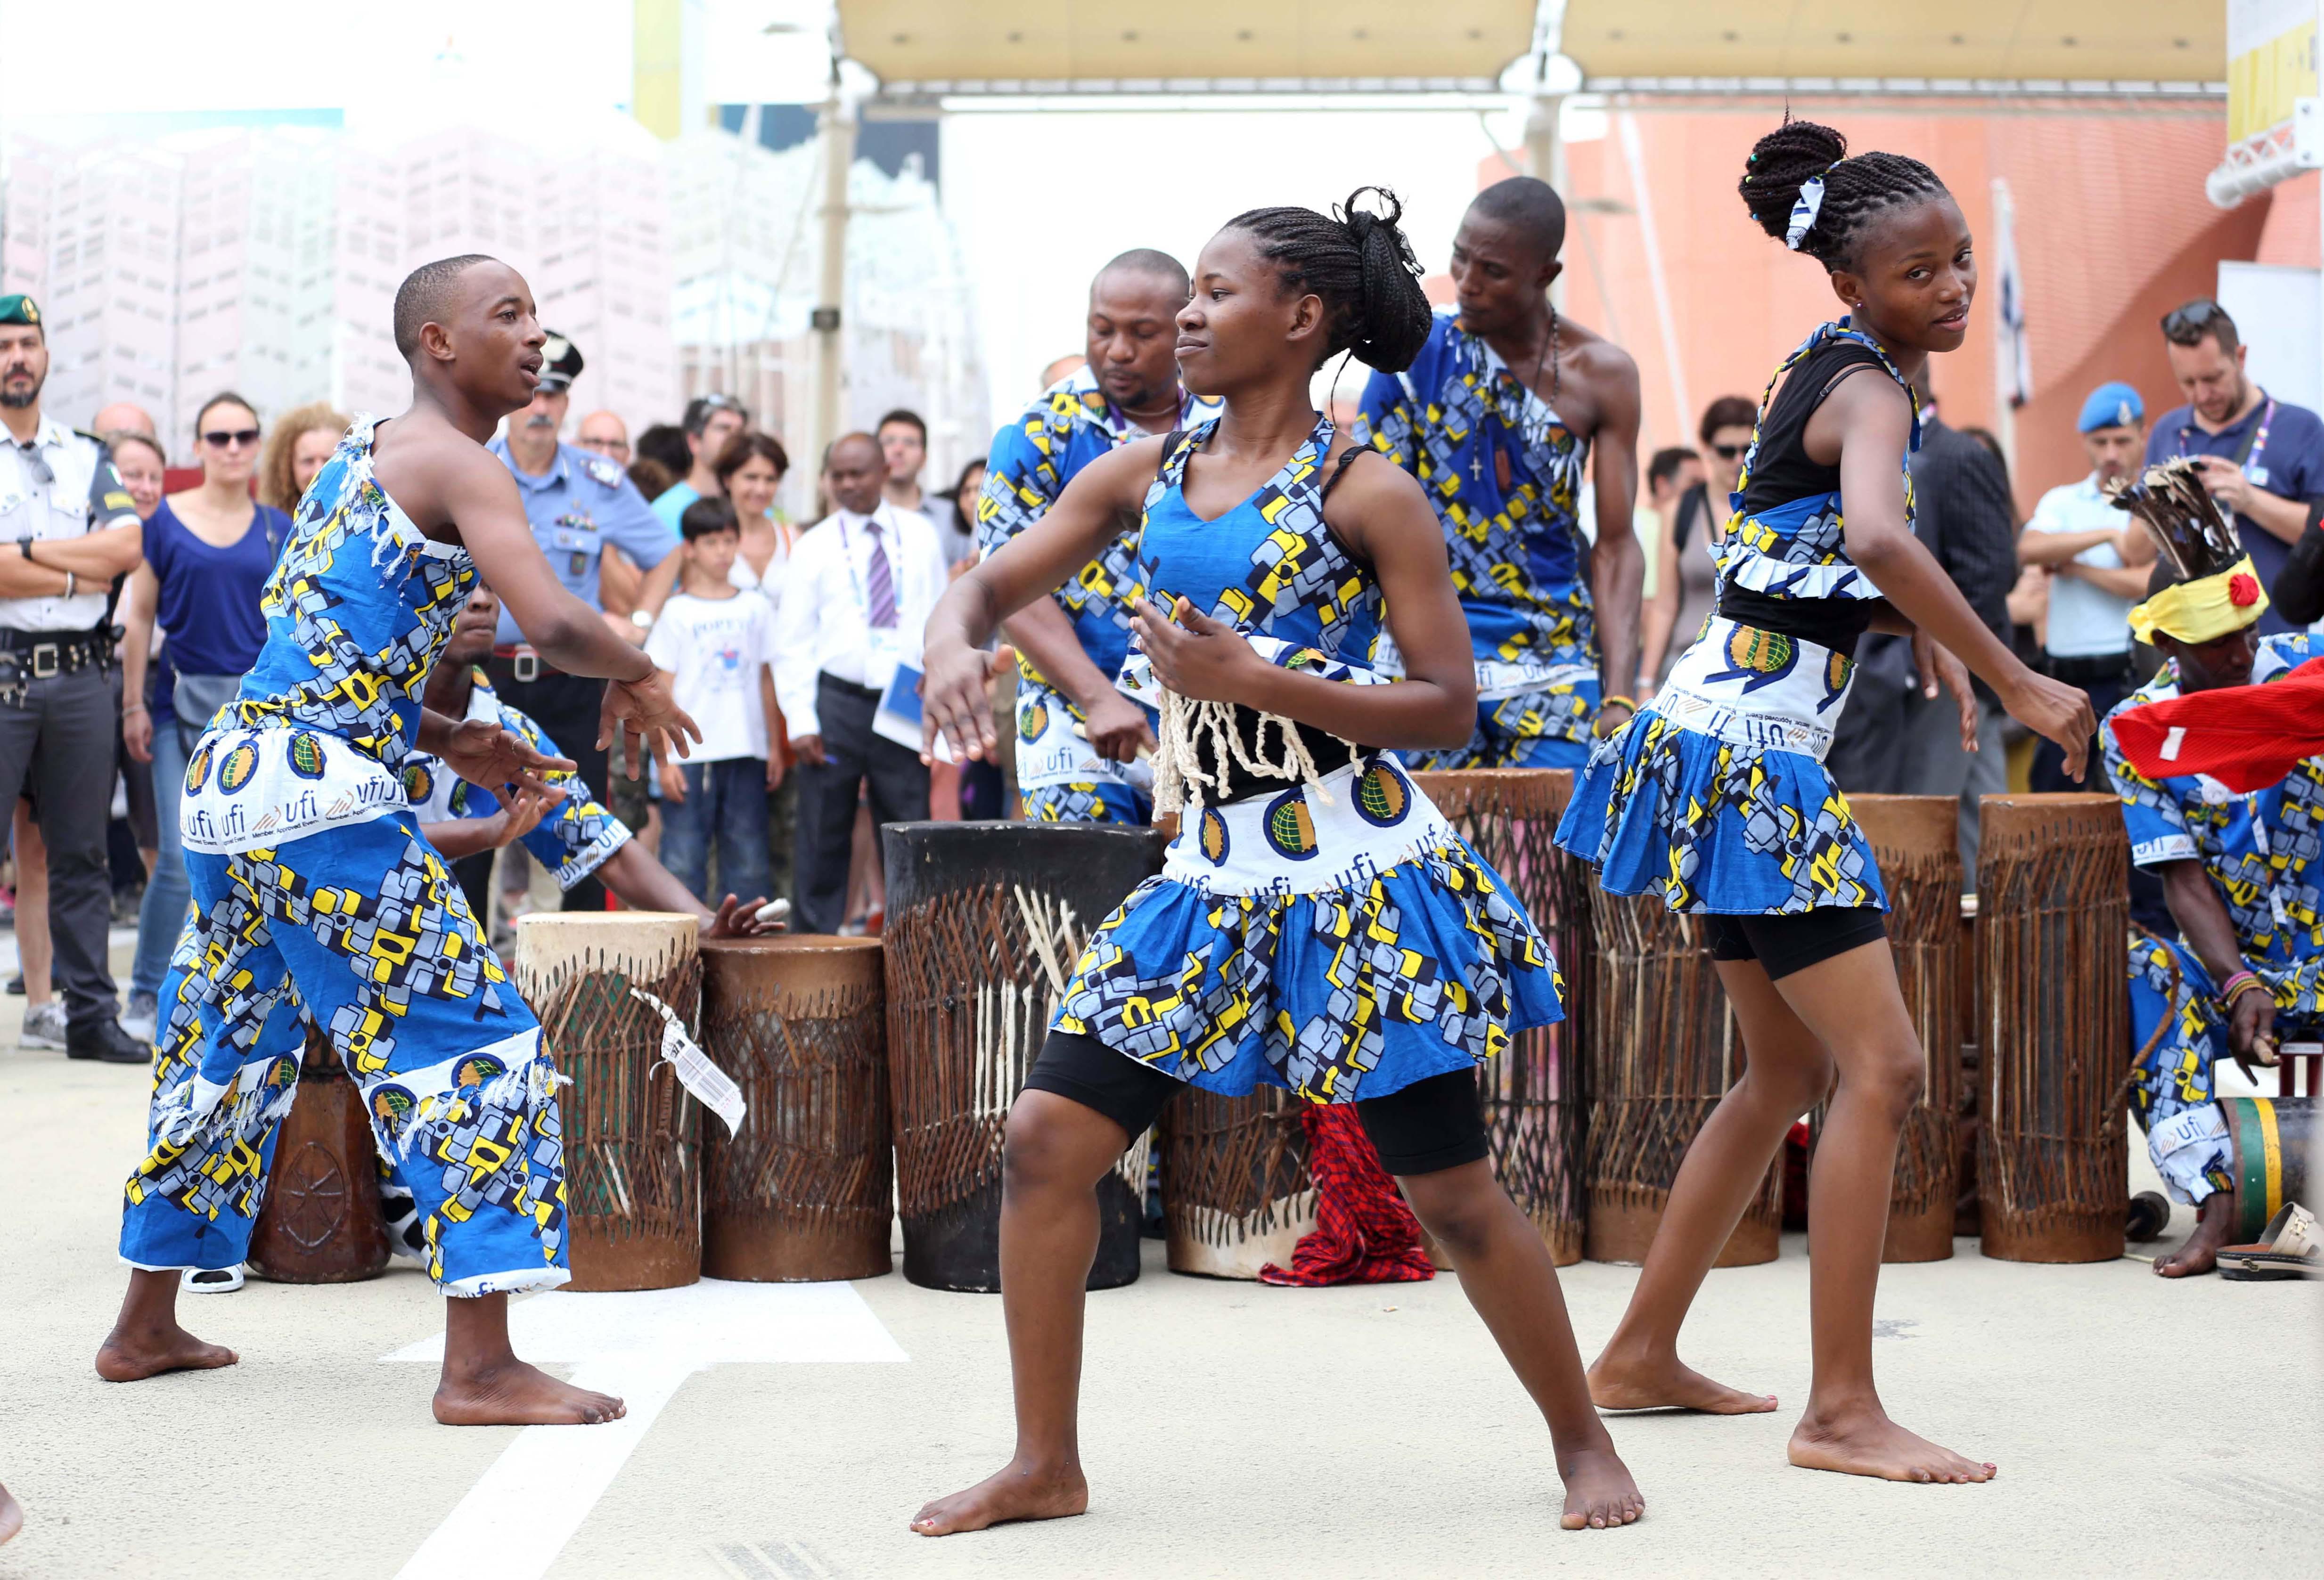 La Tanzania celebra il suo Nationa day all'Esposizione universale